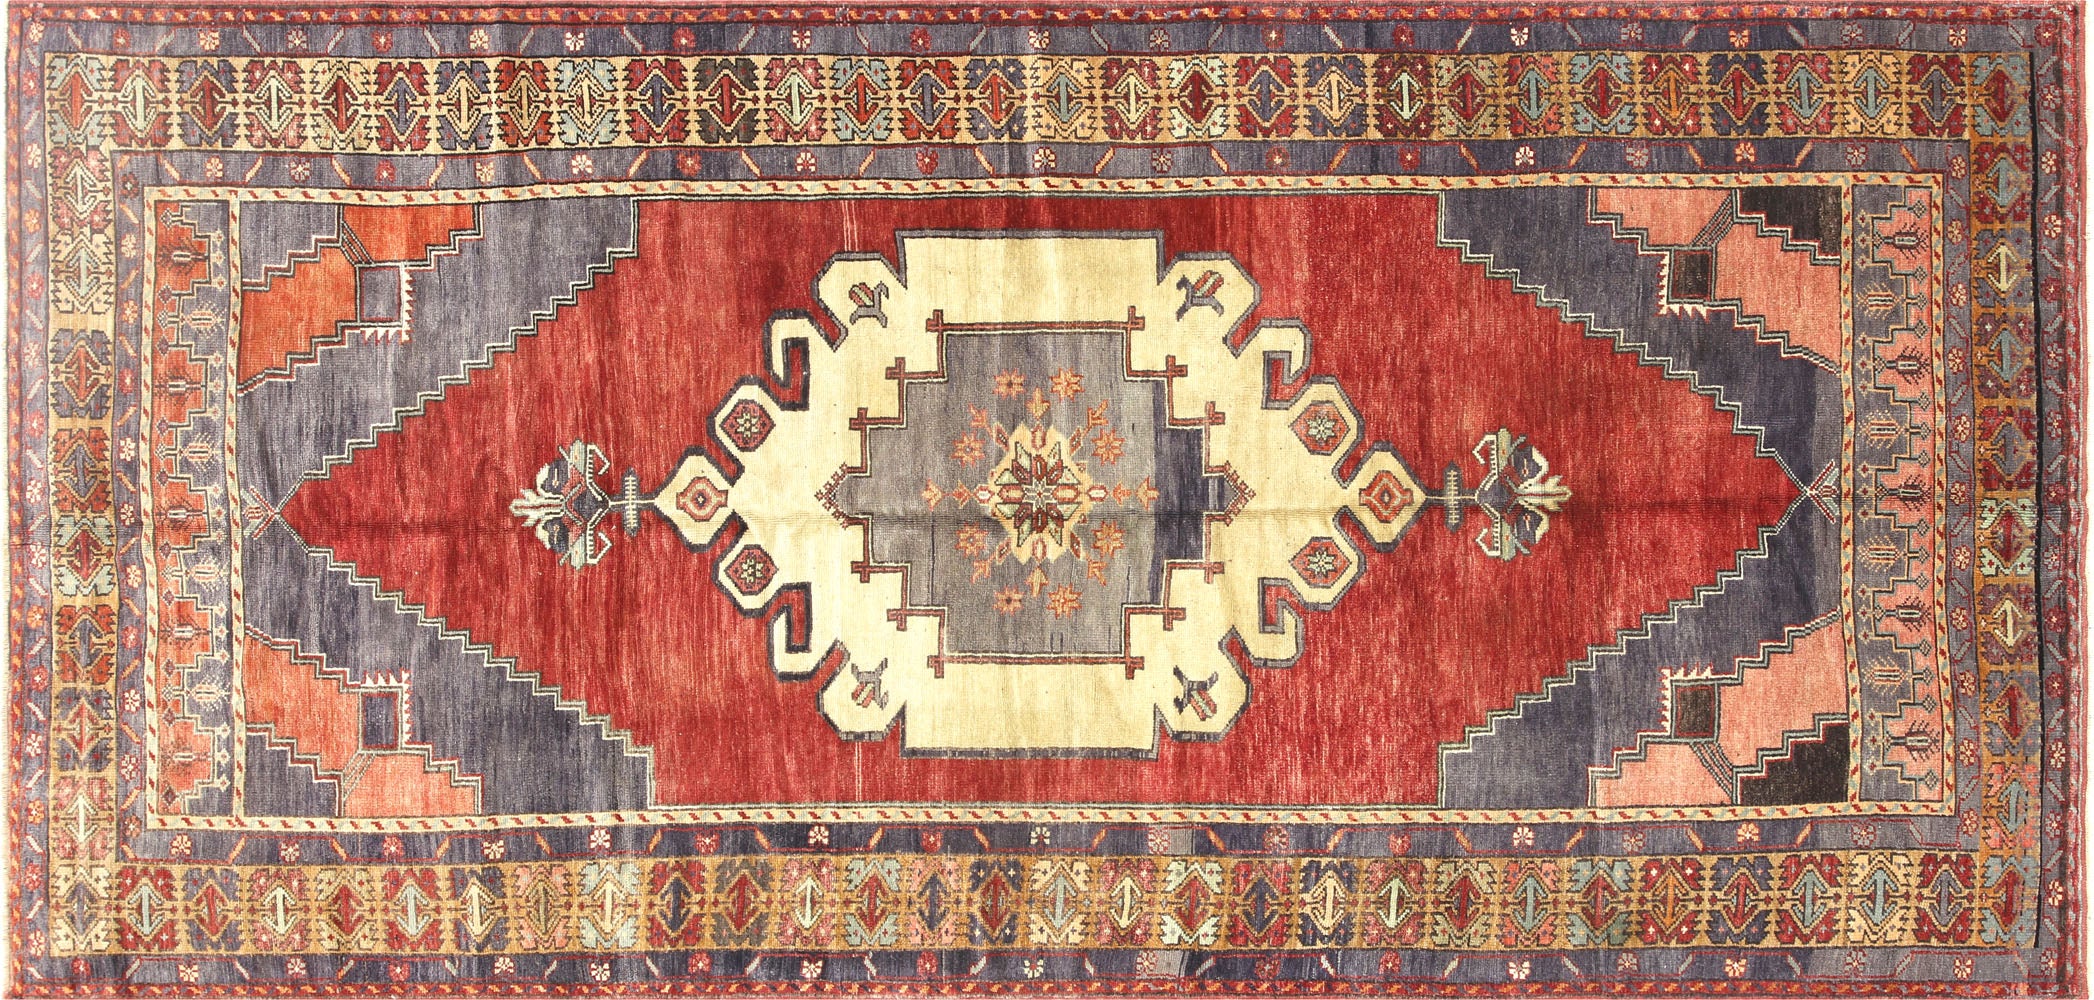 Vintage Turkish Oushak Carpet - 5' x 10'6"